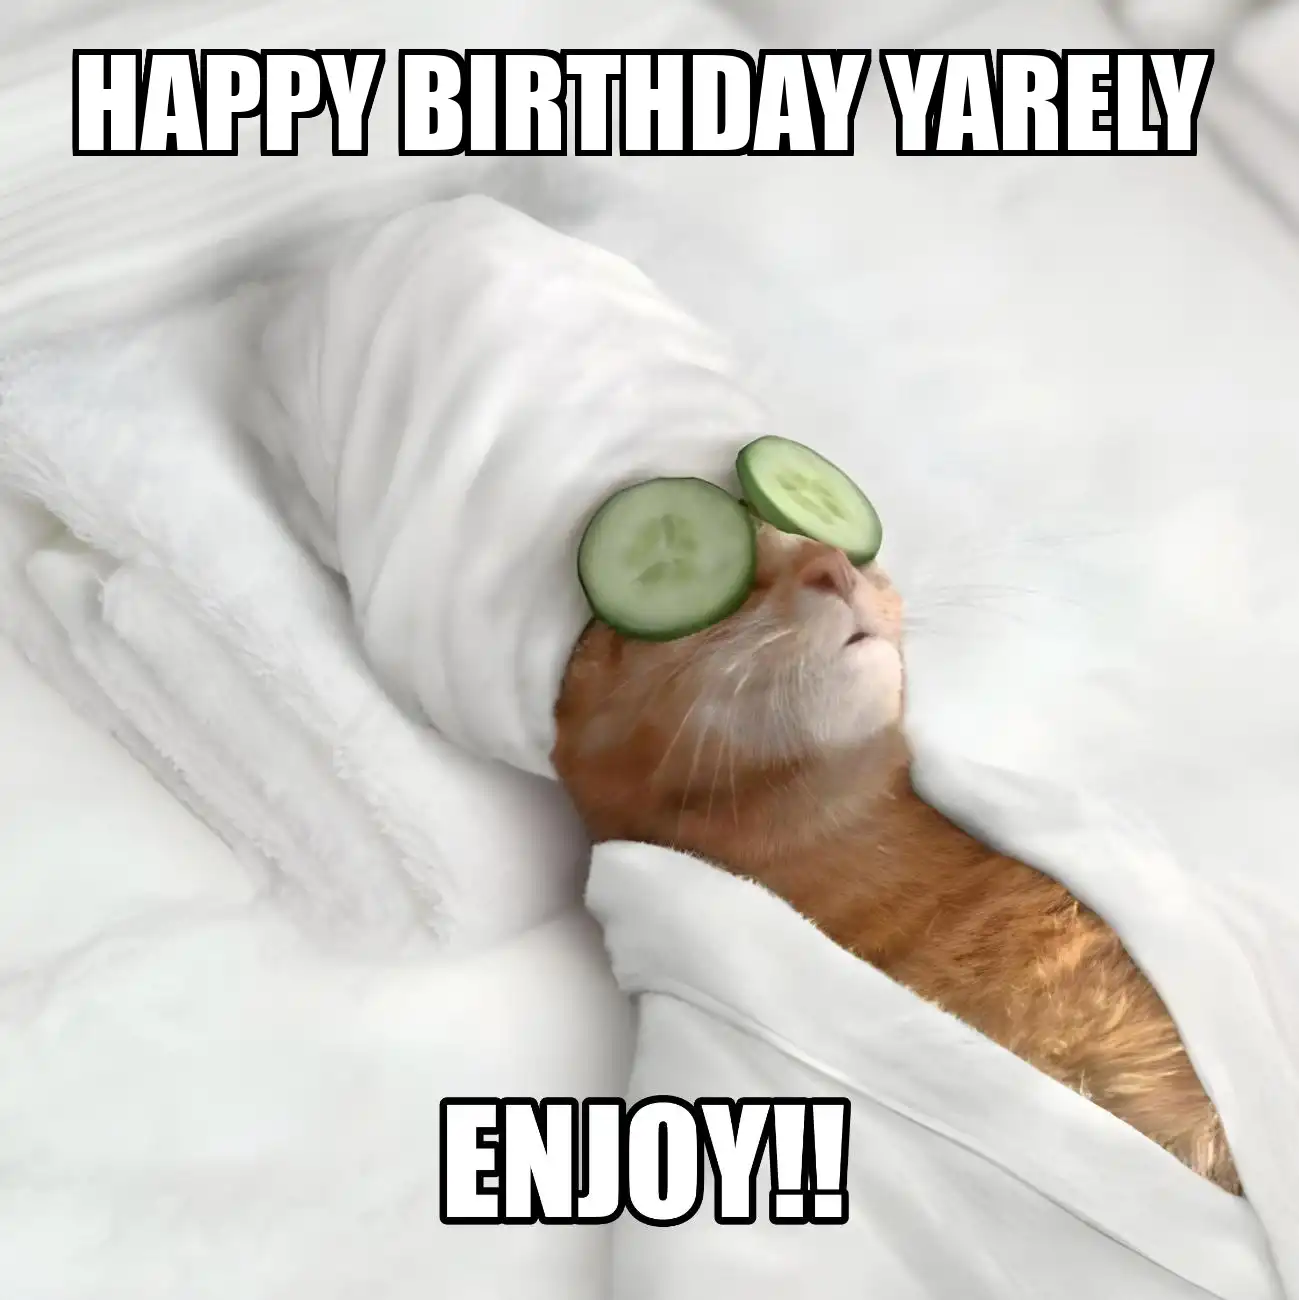 Happy Birthday Yarely Enjoy Cat Meme